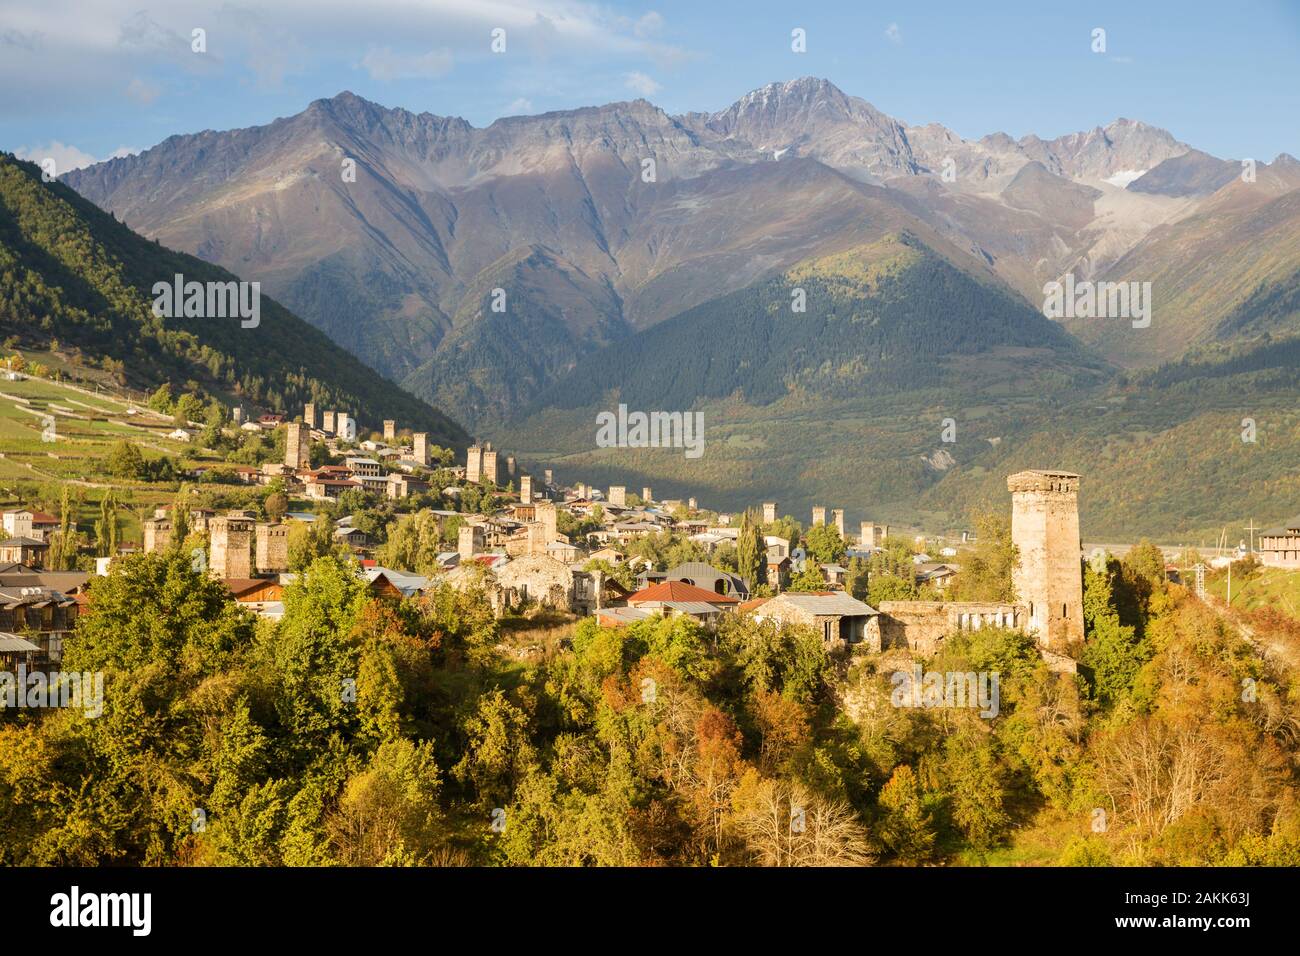 Vue aérienne de Mestia avec Svan traditionnels tours. L'automne magnifique paysage de montagne. Voyages du Caucase. La Géorgie, Upper Svaneti Banque D'Images